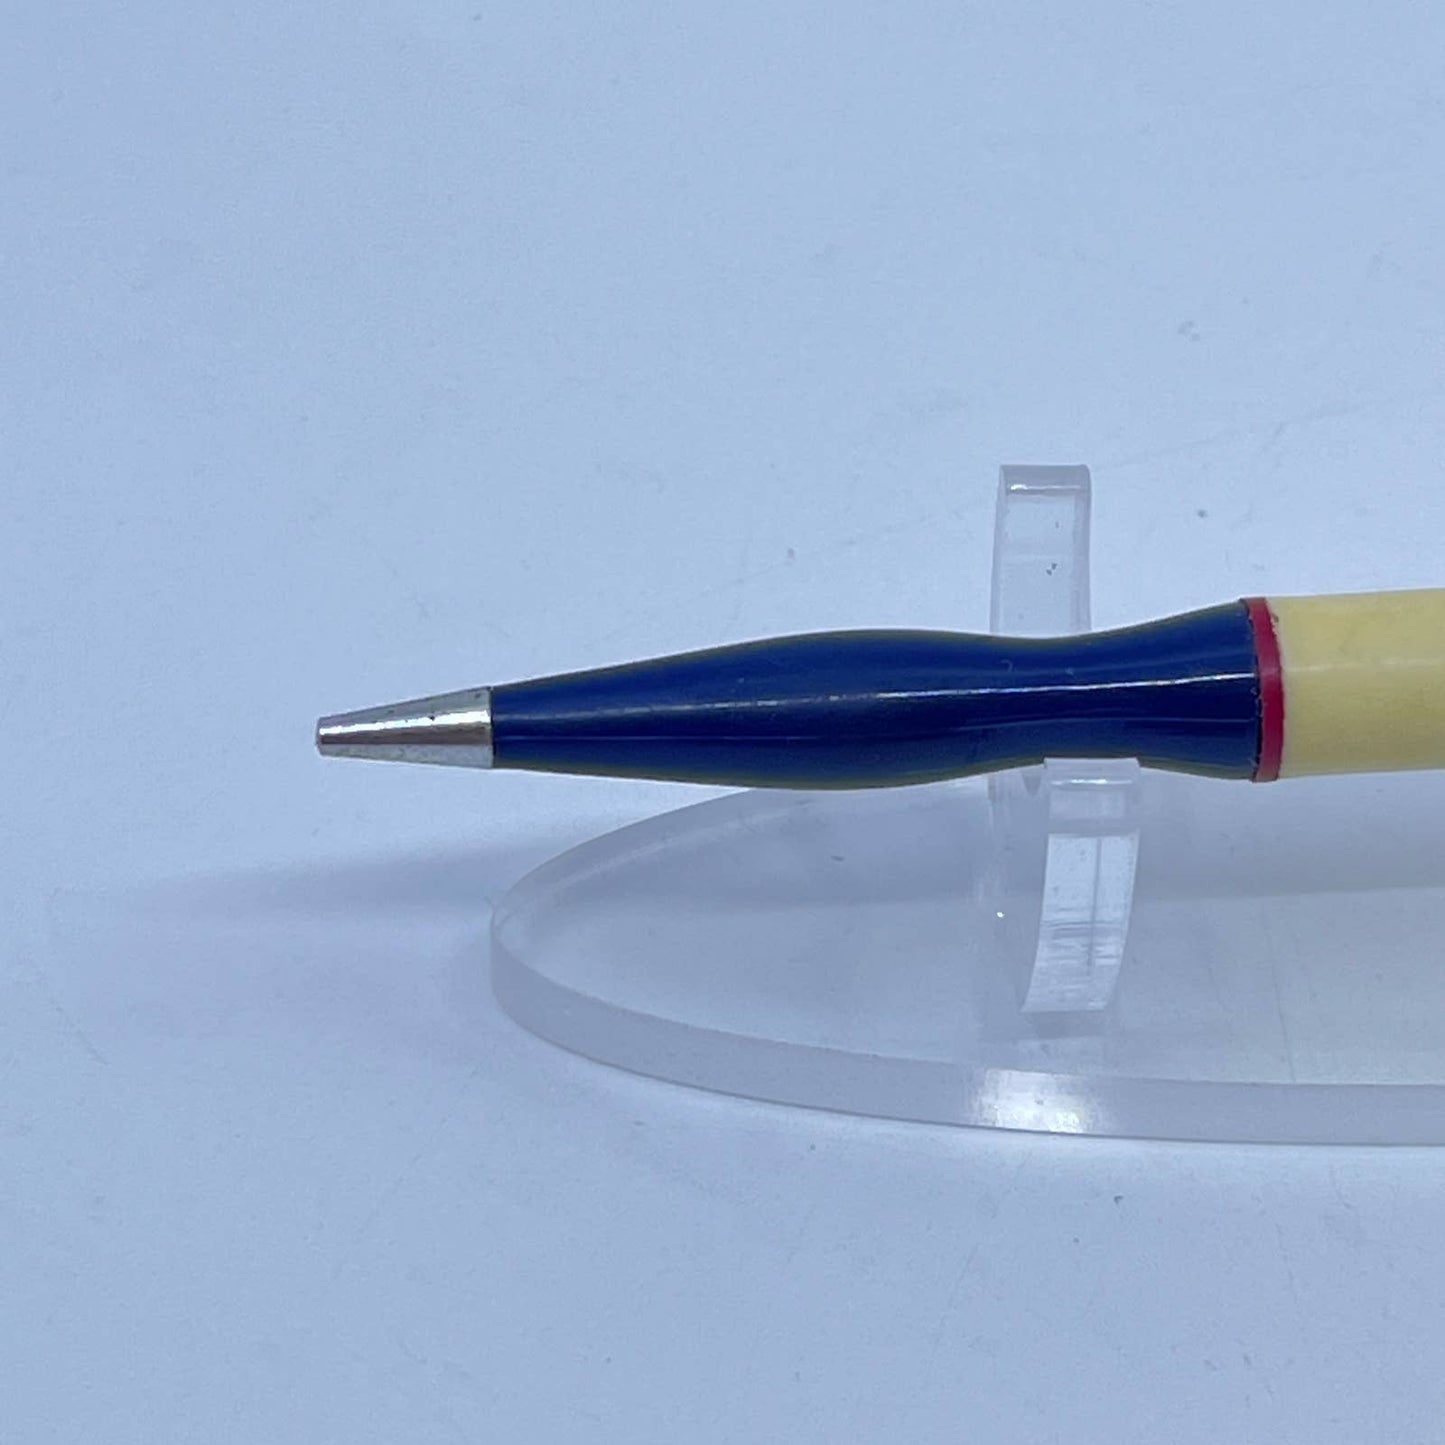 Vintage Mechanical Pencil Blue & Cream Contour Grip SD7